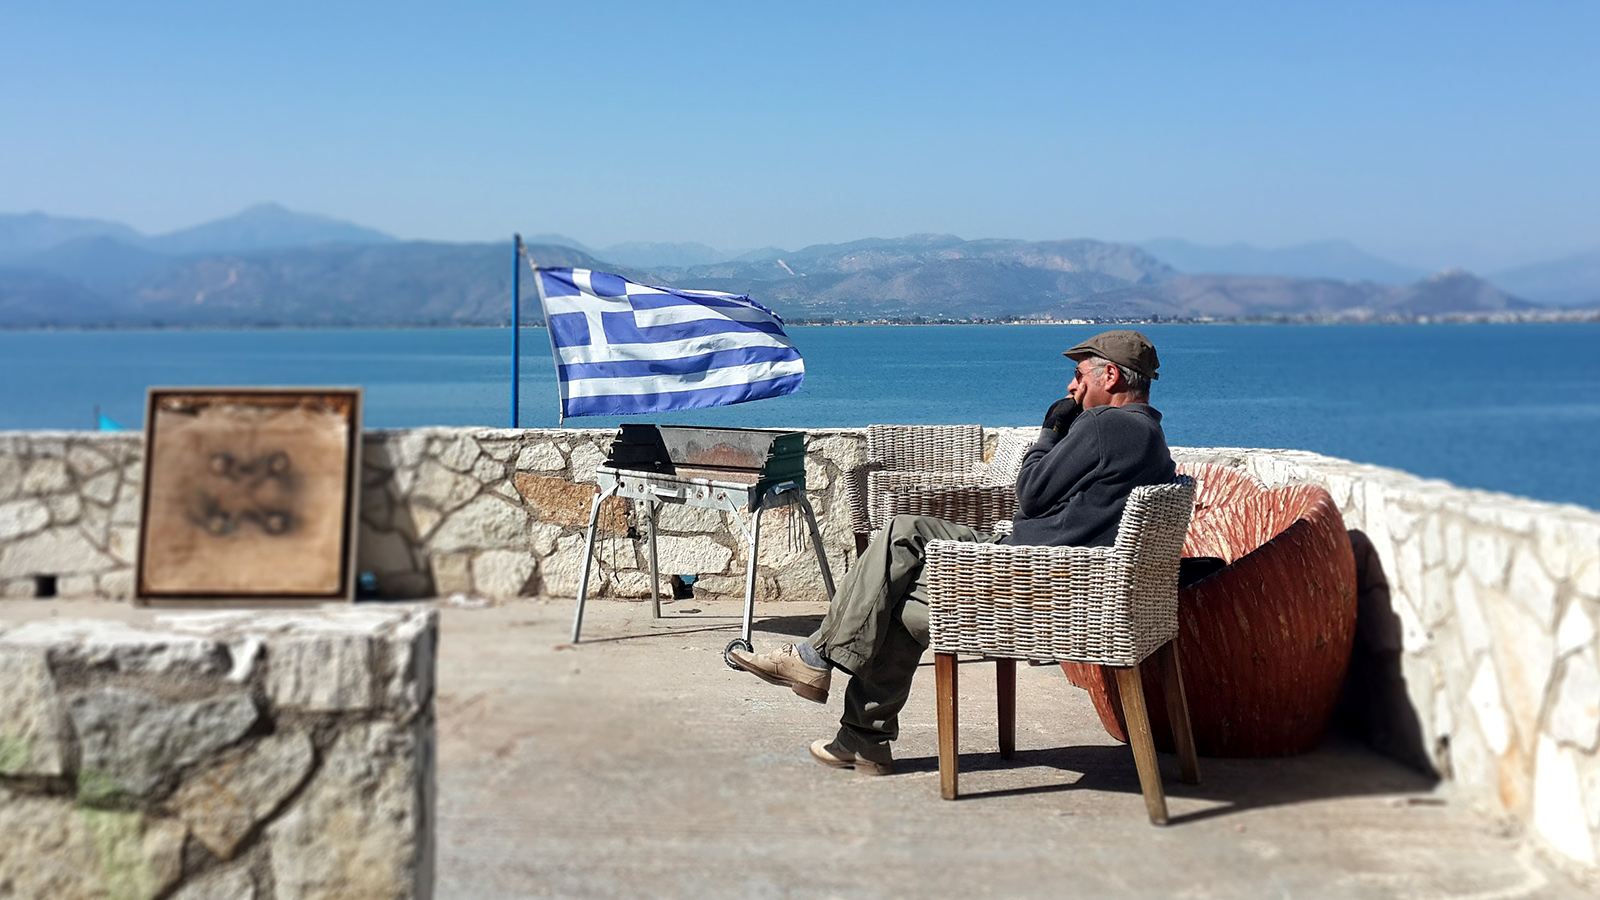 יווני זקן מביט לנוף כשברקע דגל יוון. (צילום: רז רותם).